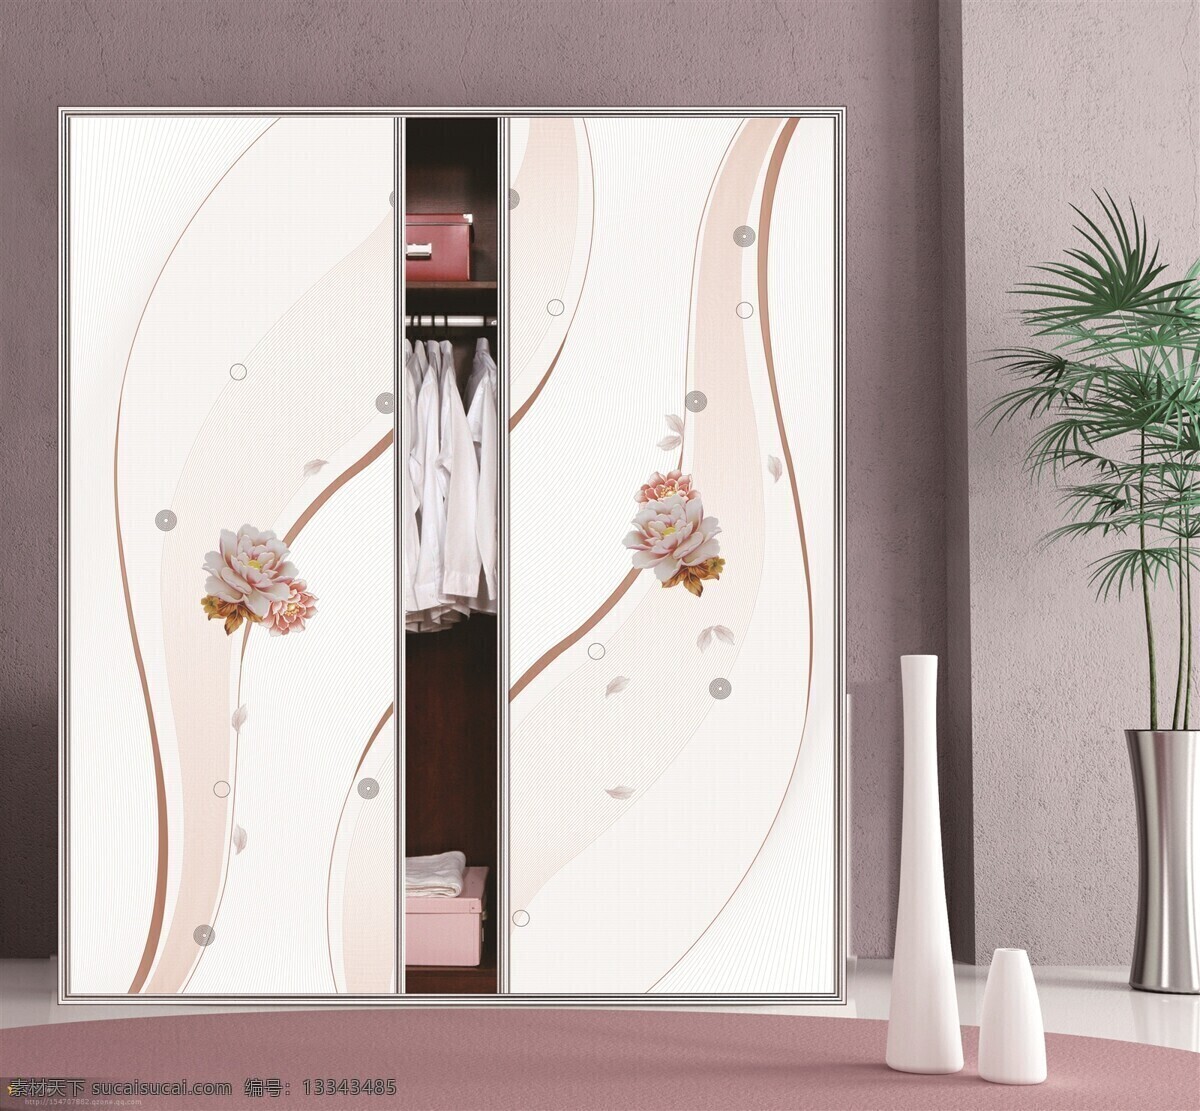 花团锦簇 3d 底纹边框 幸福美满 衣柜门 移门图案 艺术玻璃 超白系列 工艺玻璃图案 艺术玻璃图案 家居装饰素材